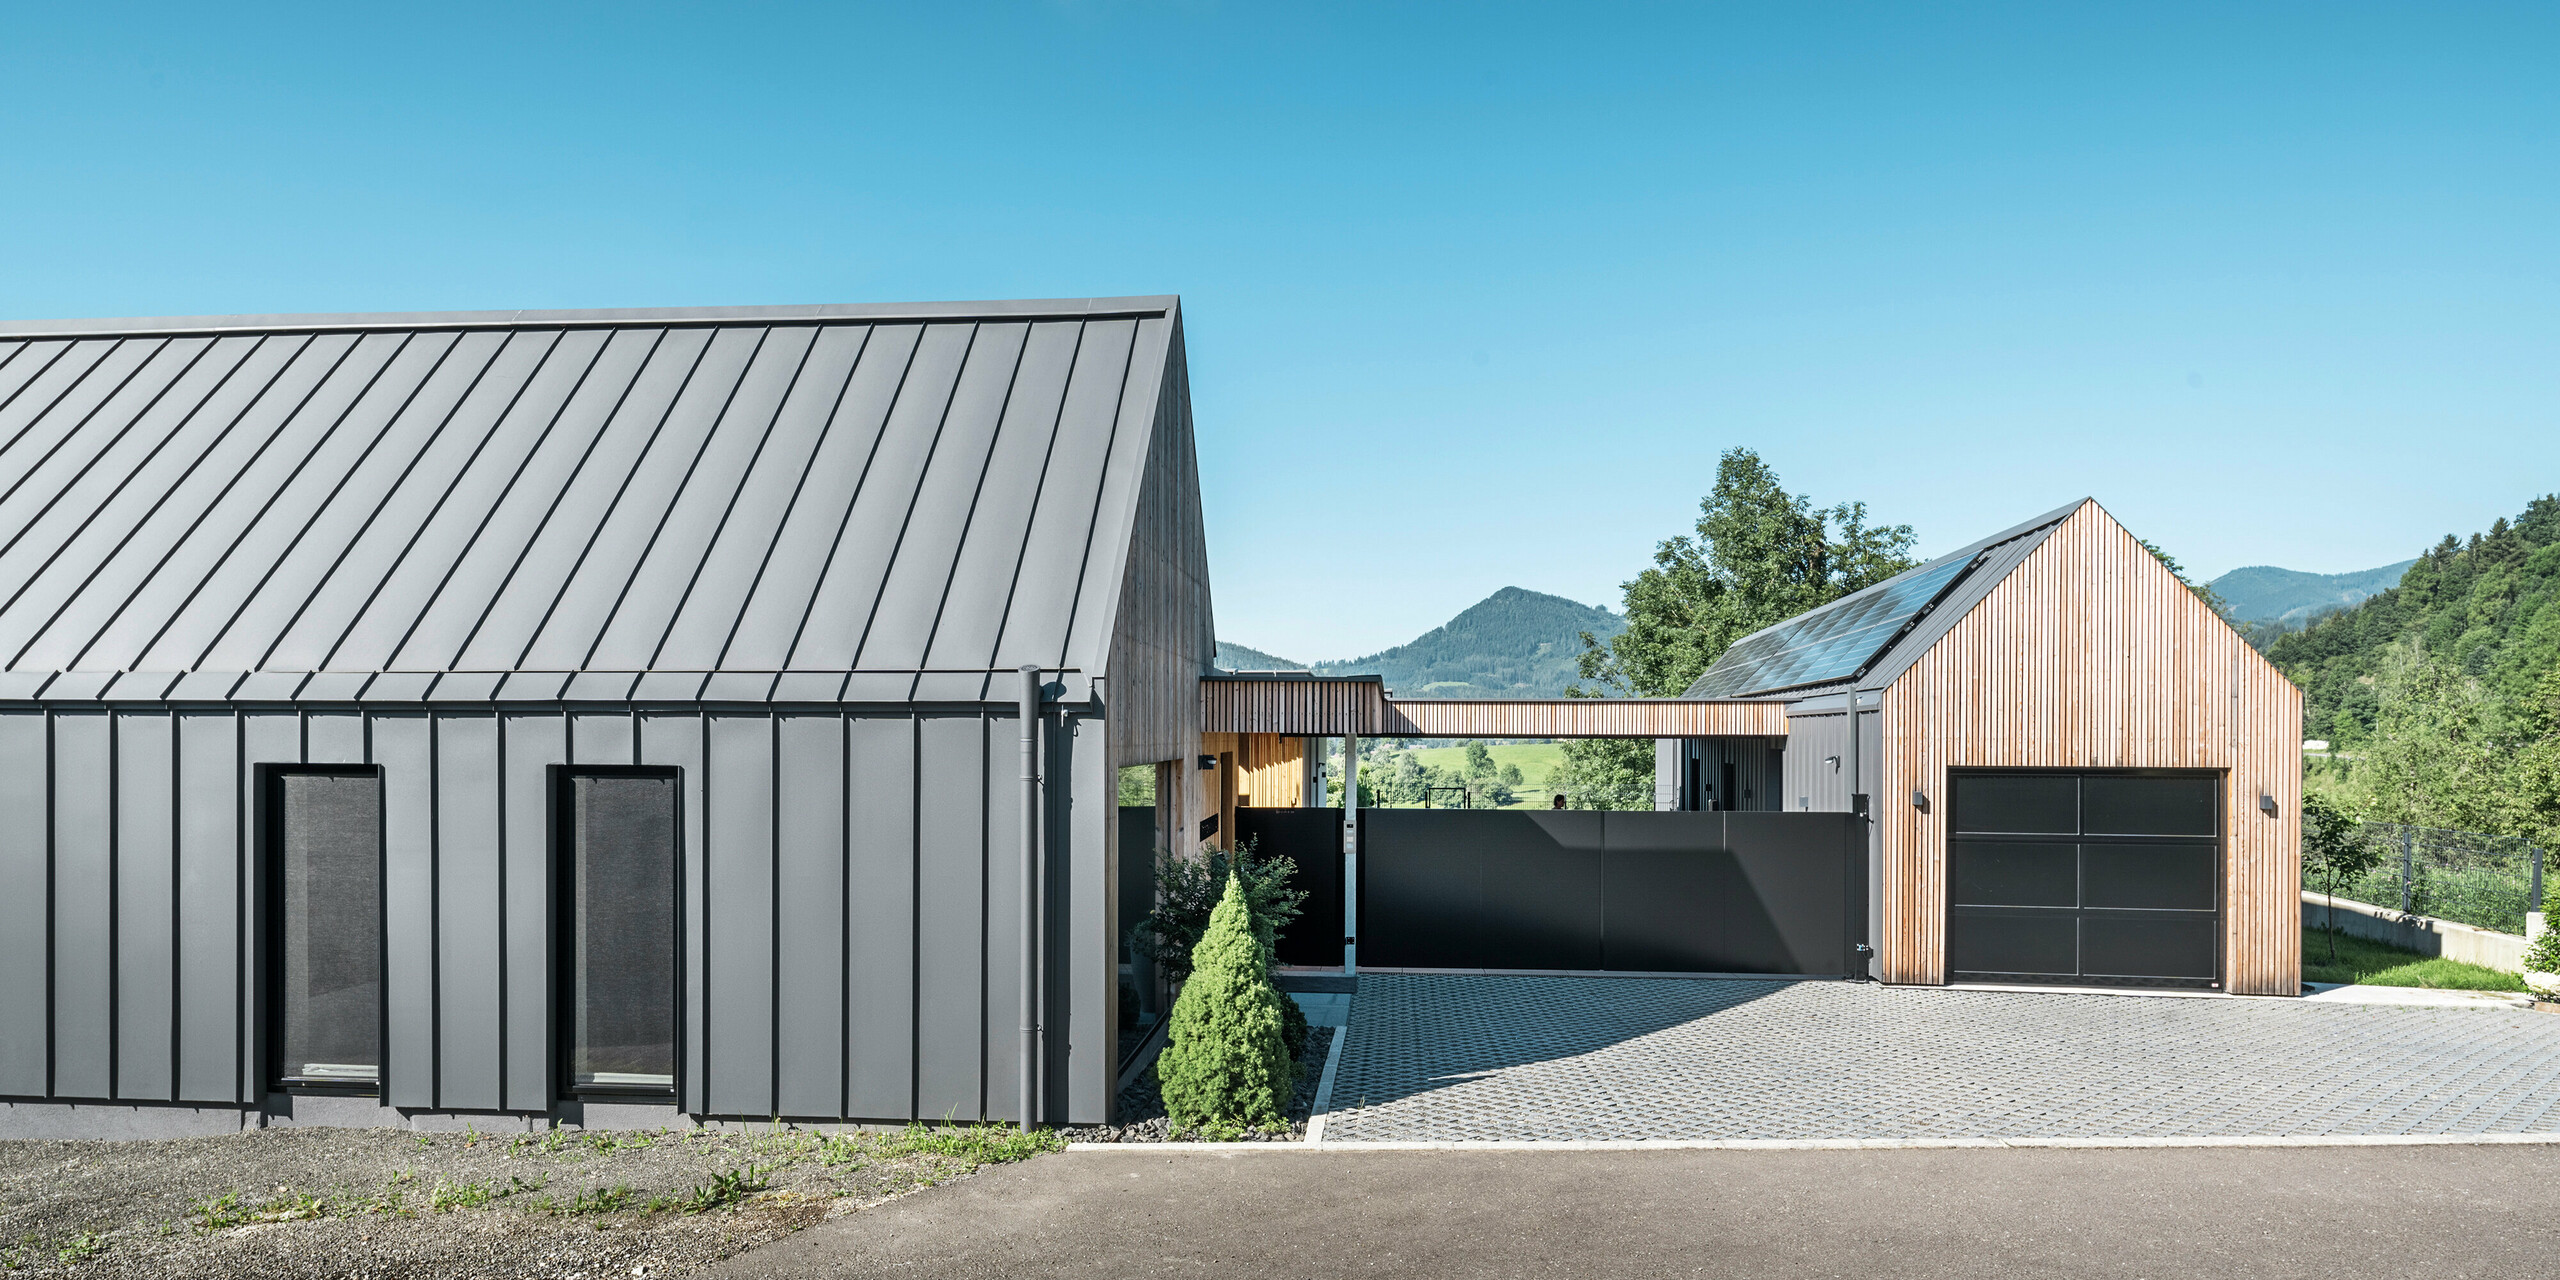 Vstupní areál rodinného domu s přilehlou garáží v rakouském Pogier uprostřed malebné krajiny. Střecha a fasáda obou budov jsou vybaveny odolným PREFALZ v P.10 tmavě šedé barvě, který vytváří moderní vzhled. Garáž se vyznačuje harmonicky integrovaným dřevěným obkladem, který hladce zapadá do okolní přírody. Dlážděné nádvoří a čisté linie designu doplňují estetiku nemovitosti, zatímco v pozadí zvlněné kopce dotvářejí obraz klidné zelené oázy v zeleném srdci Rakouska.